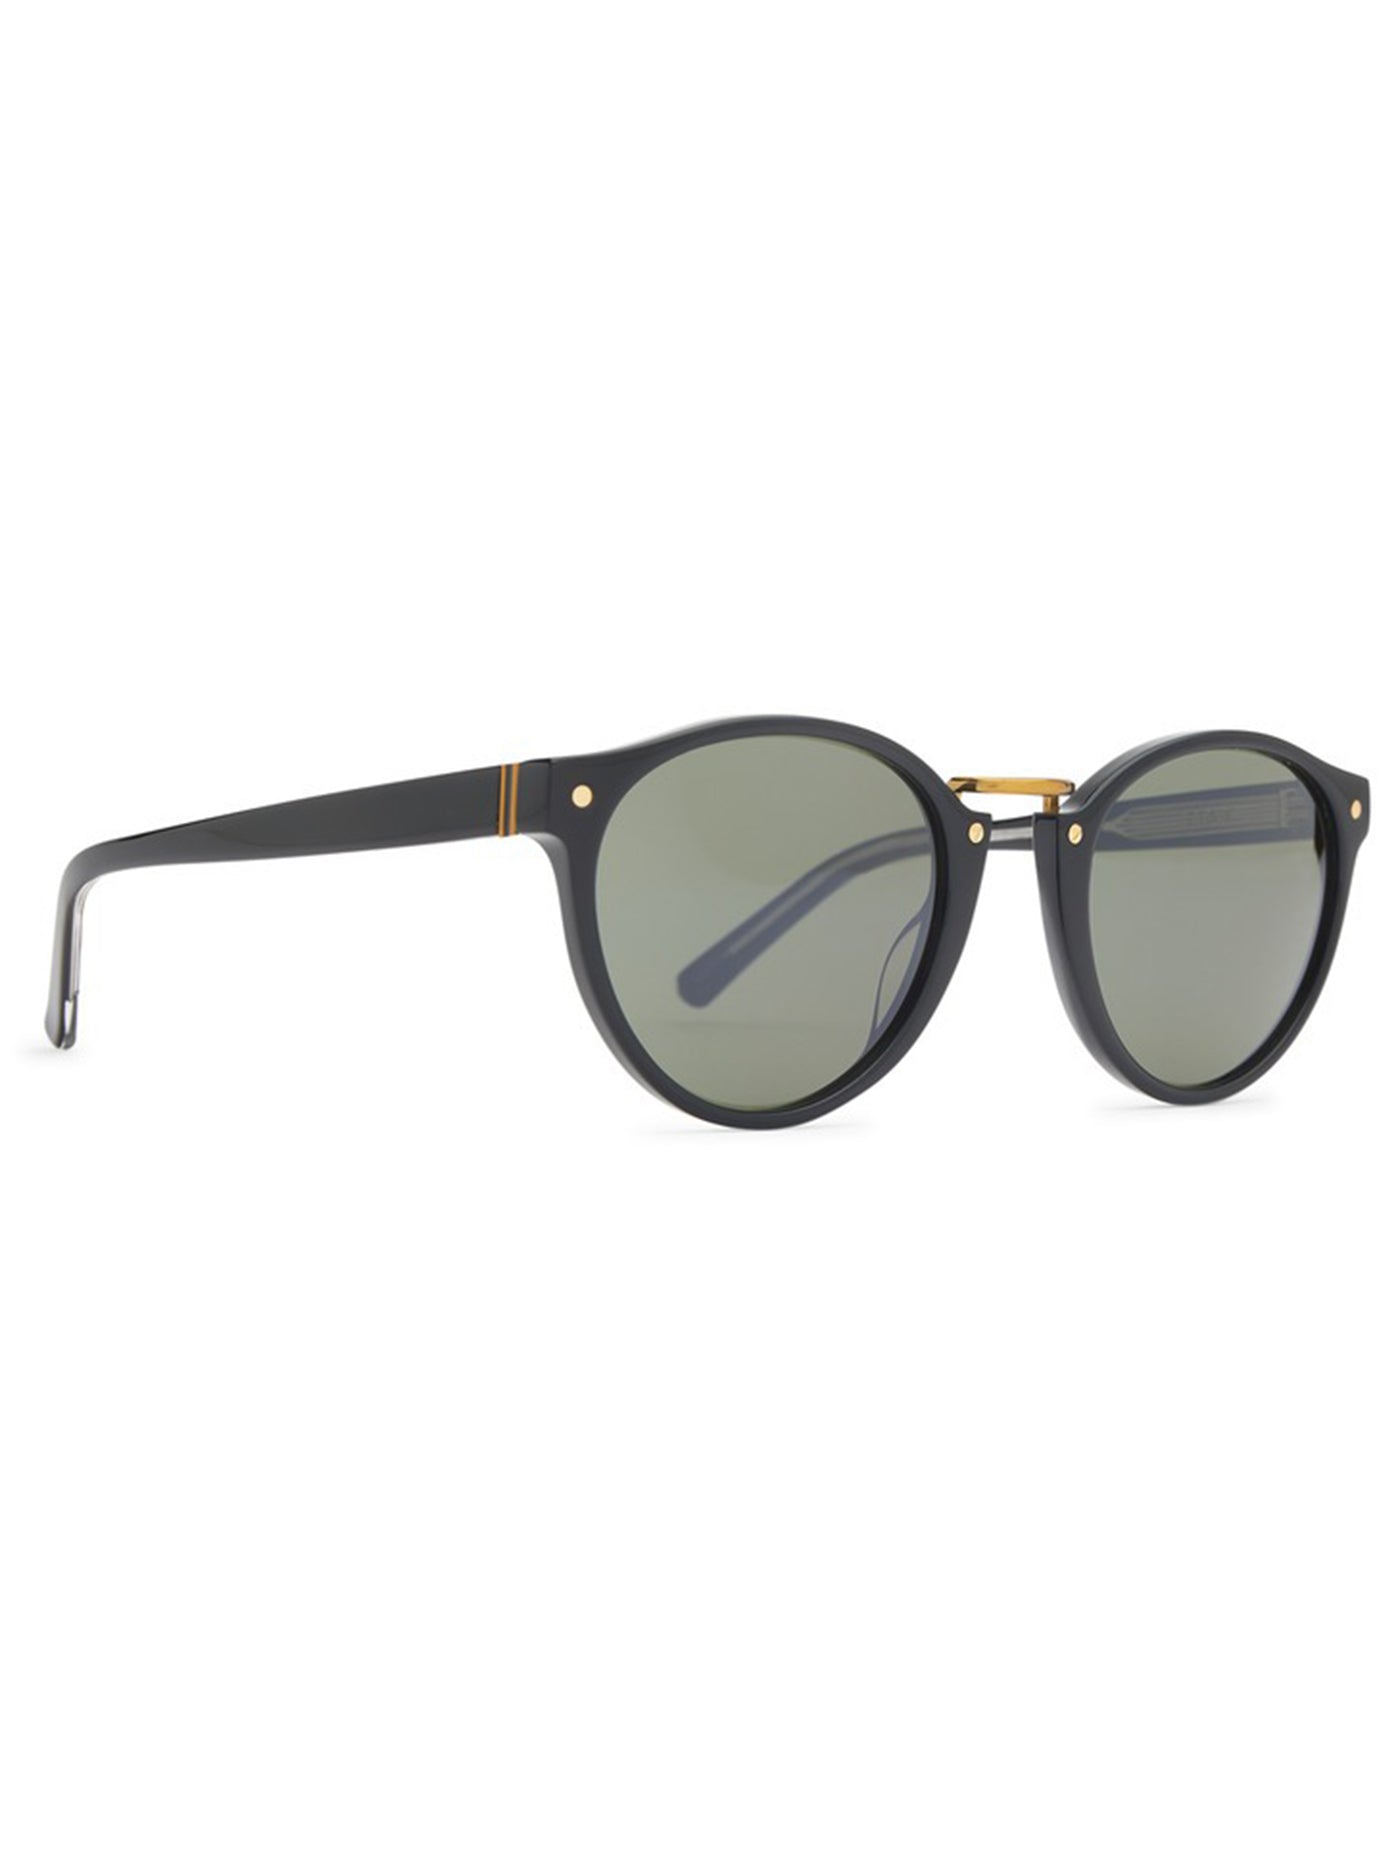 Von Zipper Stax Black Crystal/Vintage Grey Sunglasses